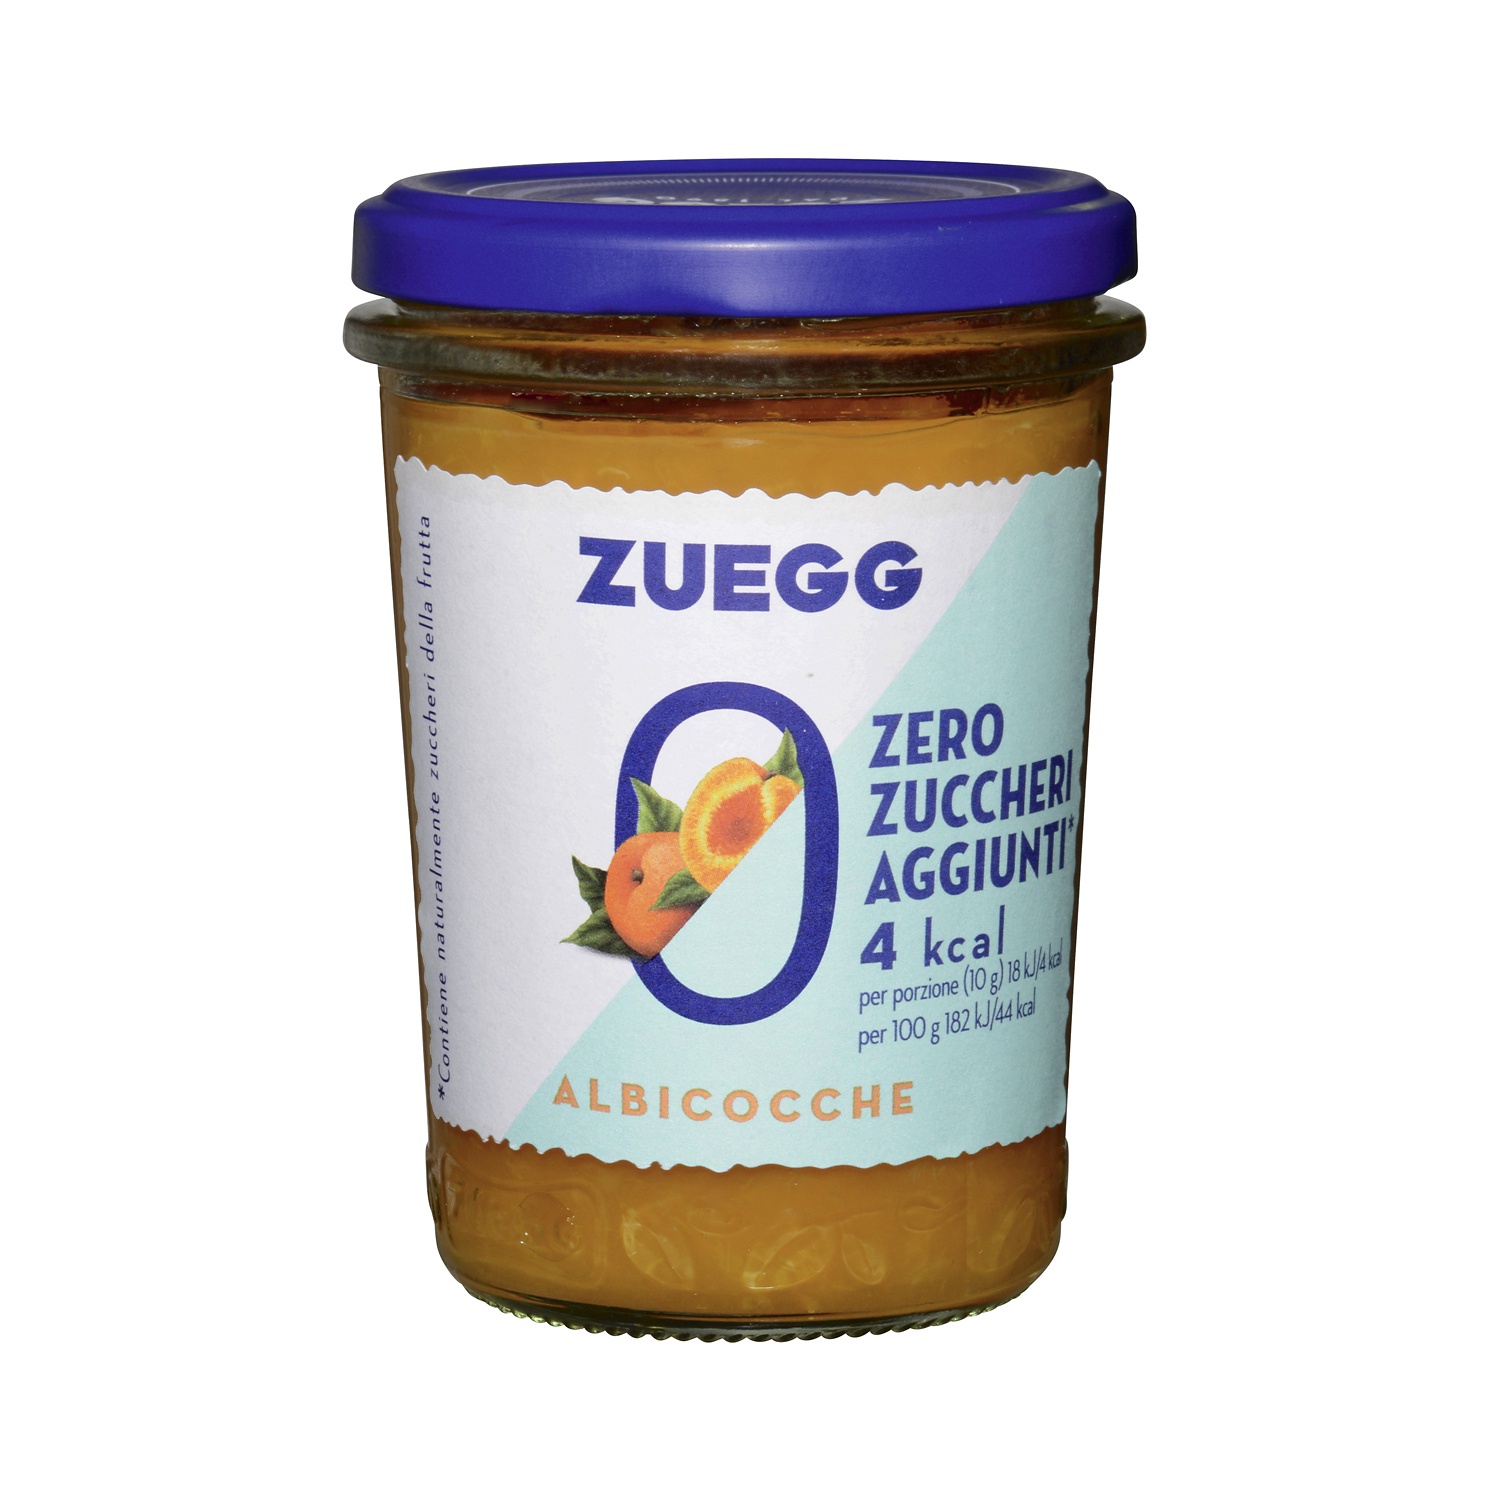 ZUEGG Confettura Zero Zuccheri aggiunti alle albicocche